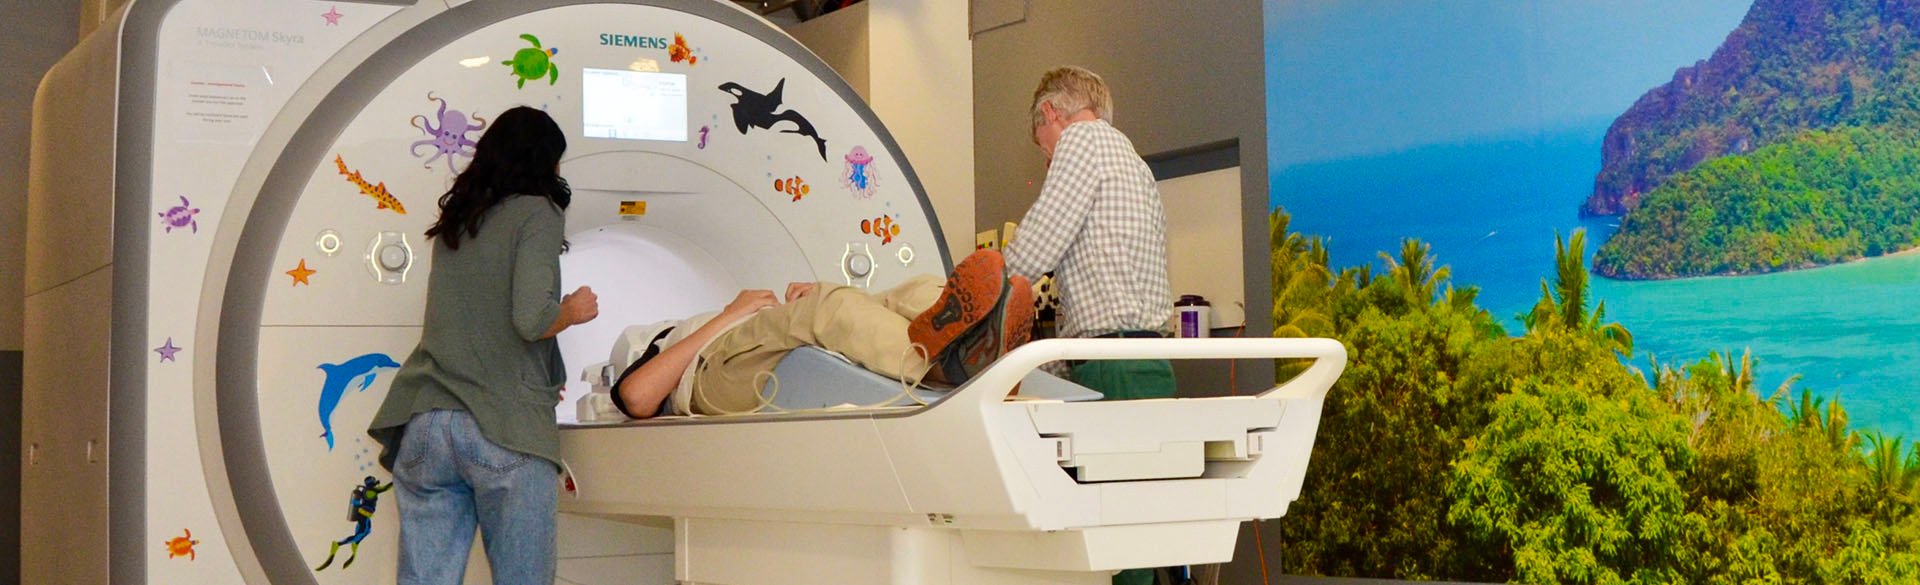 研究人员引导病人进入核磁共振扫描仪